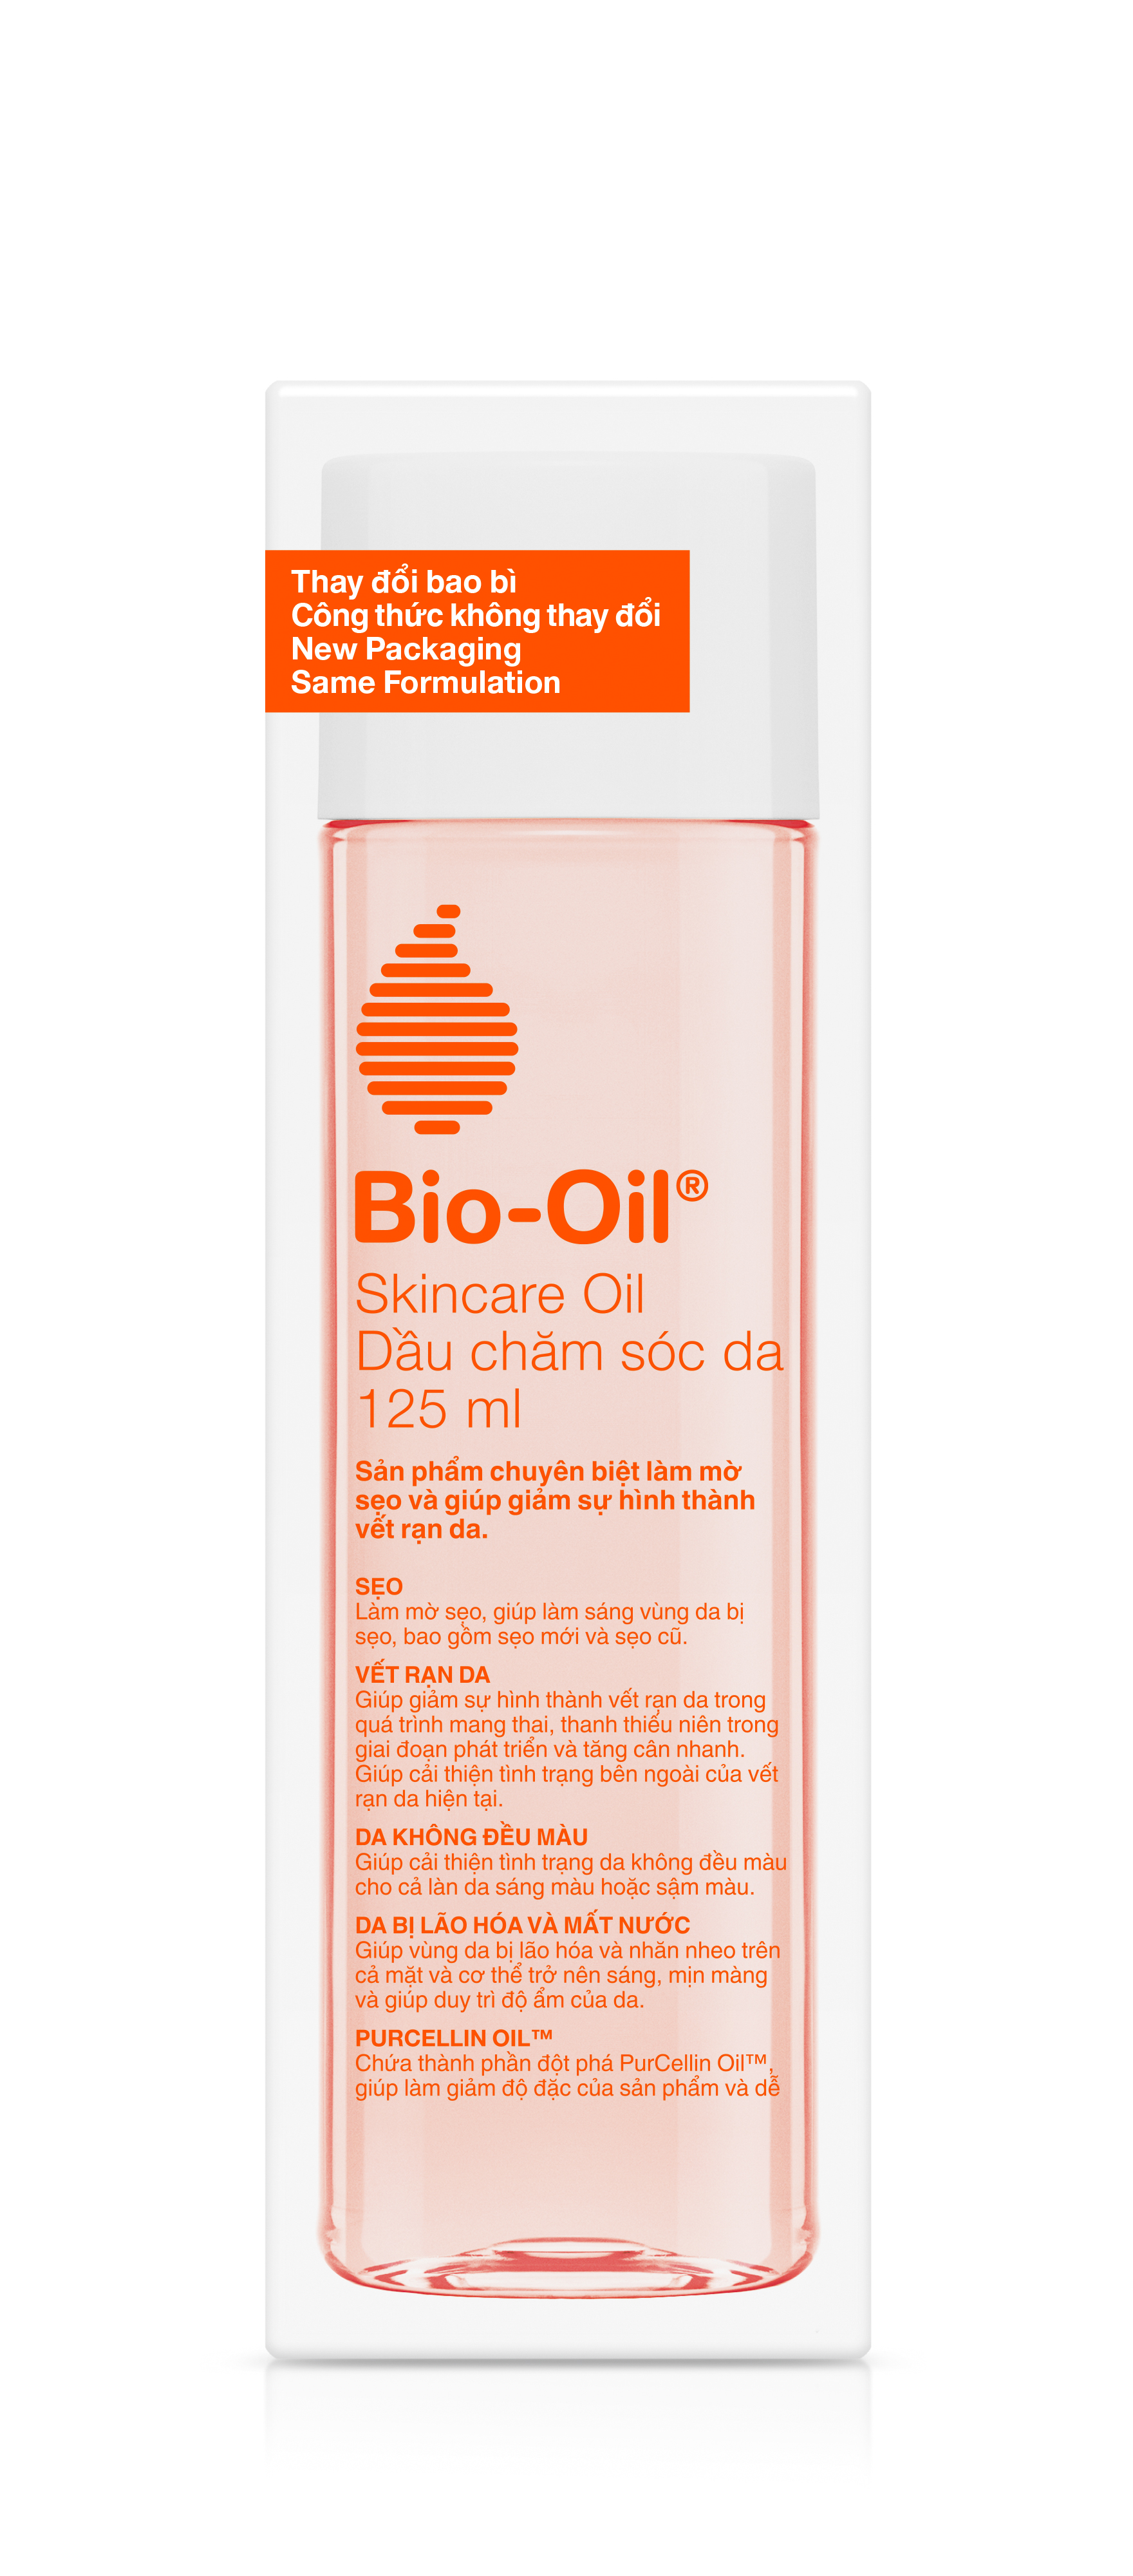 Dầu chăm sóc da giúp cải thiện rạn da, mờ sẹo và đều màu da - BIO-OIL SKINCARE OIL (chai 125ml)